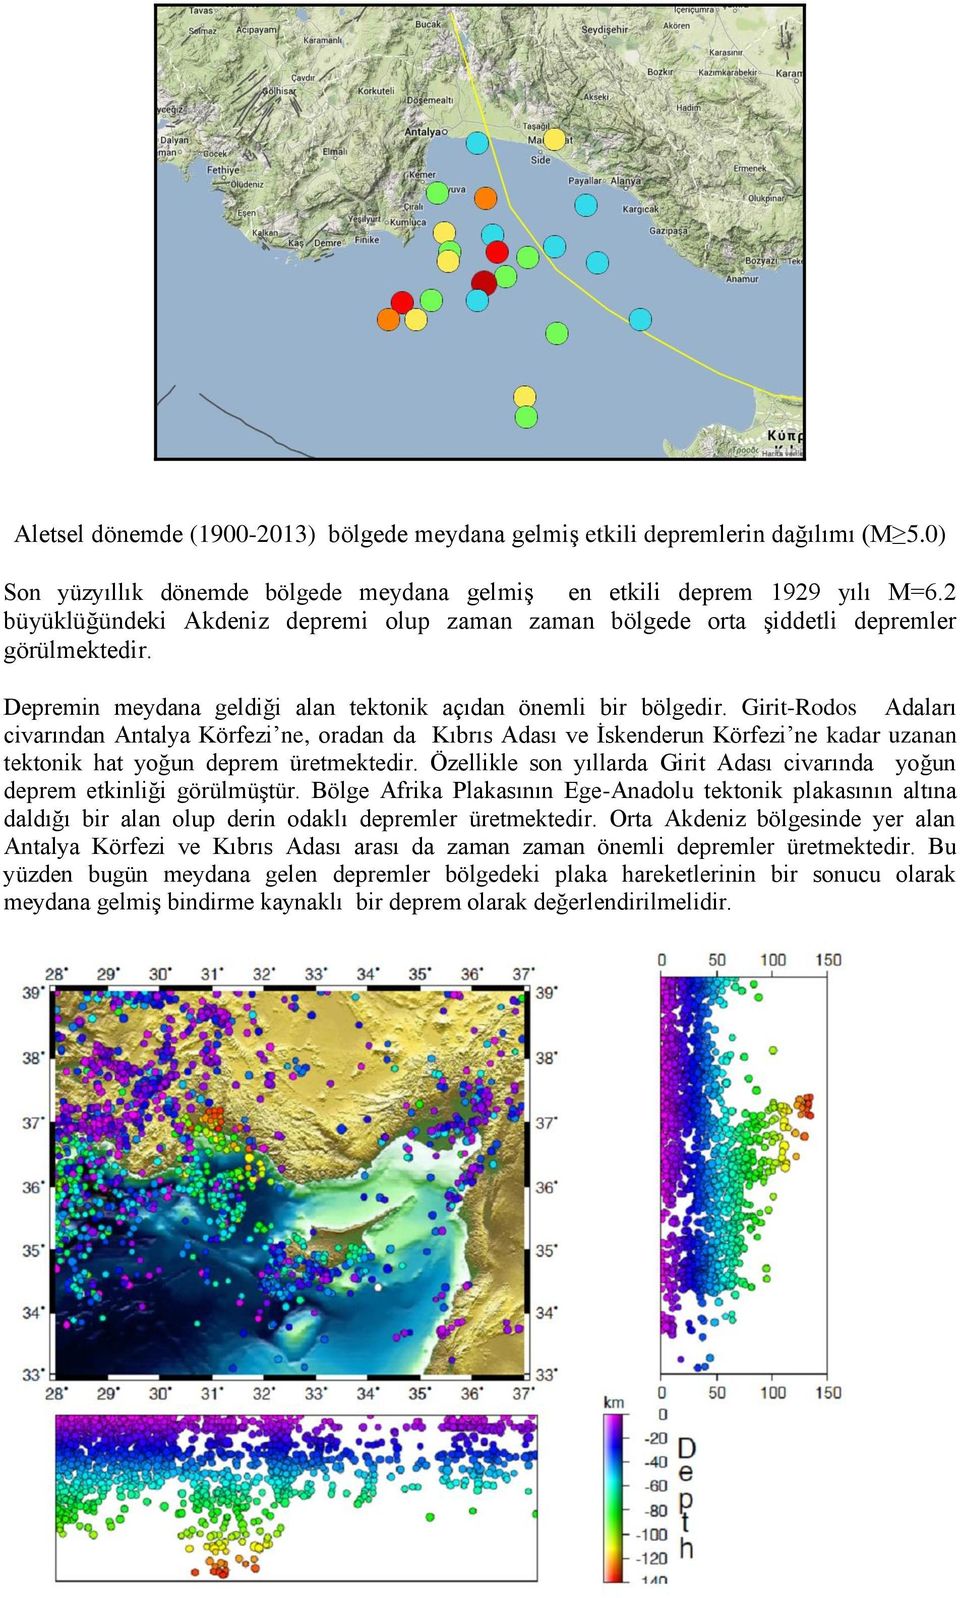 Girit-Rodos Adaları civarından Antalya Körfezi ne, oradan da Kıbrıs Adası ve İskenderun Körfezi ne kadar uzanan tektonik hat yoğun deprem üretmektedir.